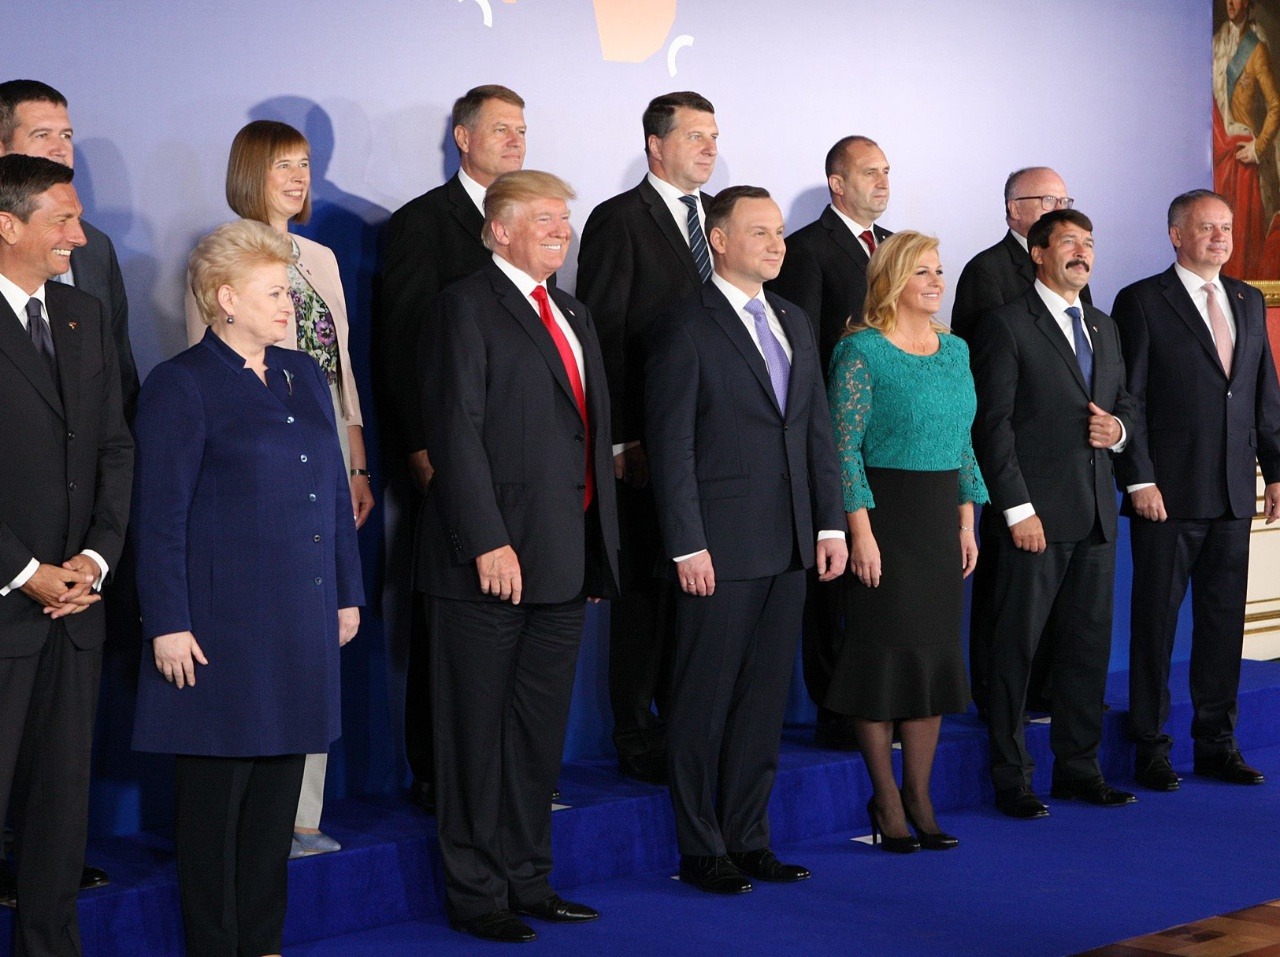 Na snímke dole vpravo prezident SR Andrej Kiska a piaty sprava americký prezident Donald Trump počas spoločného fotografovania na vrcholnej schôdzke predstaviteľov dvanástich krajín Iniciatívy troch morí (Baltské, Jadranské a Čierne more) vo Varšave 6. jú